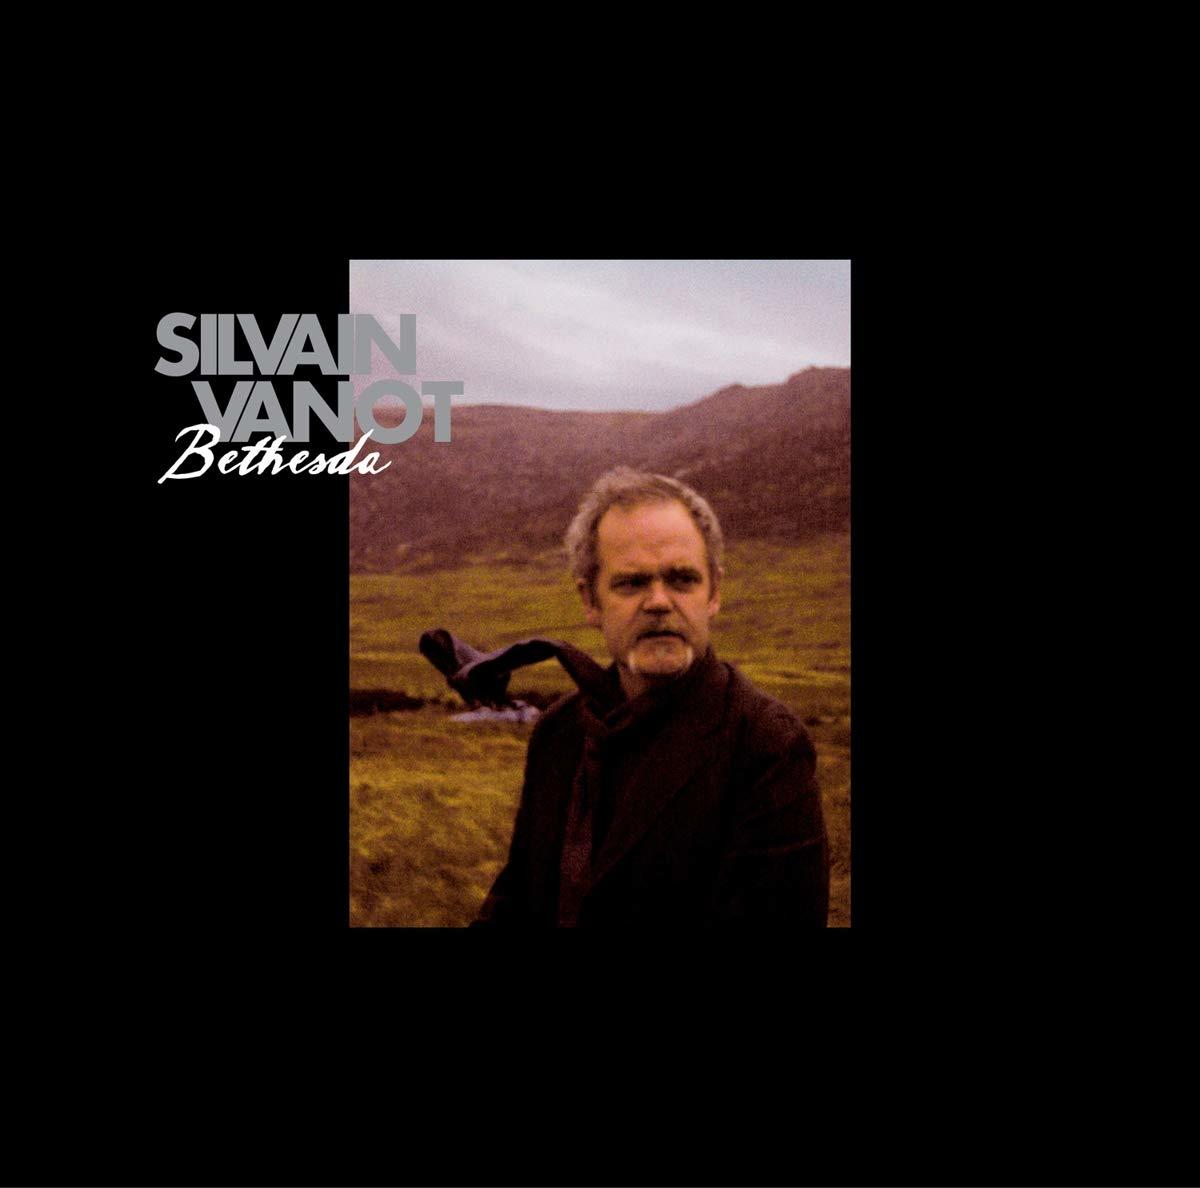 Silvain (Vinyl) Vanot Bethesda - -